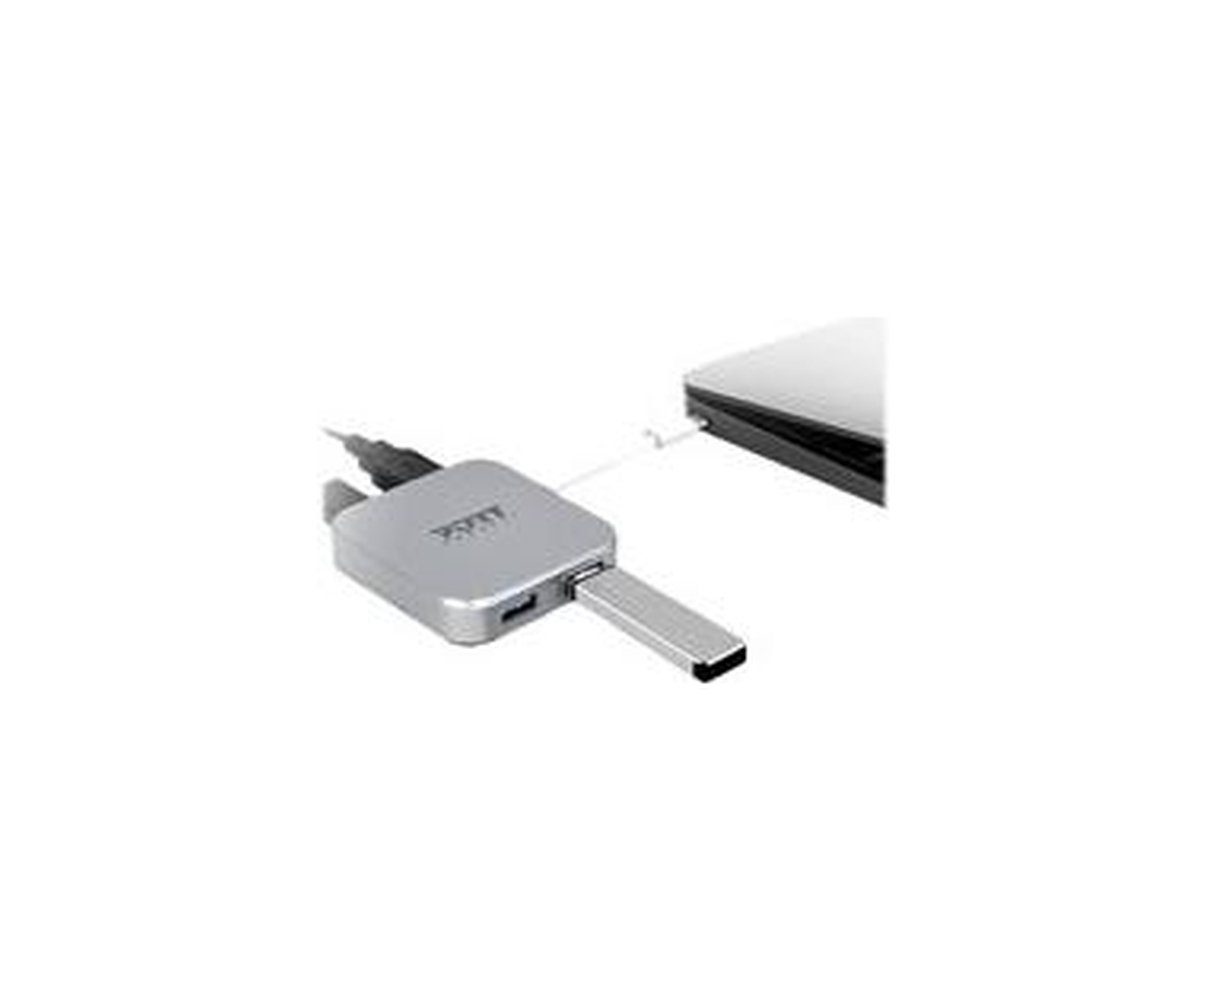 3.0 TYPE USB PORTS Netzwerk-Switch C HUB Port 4 PORT USB